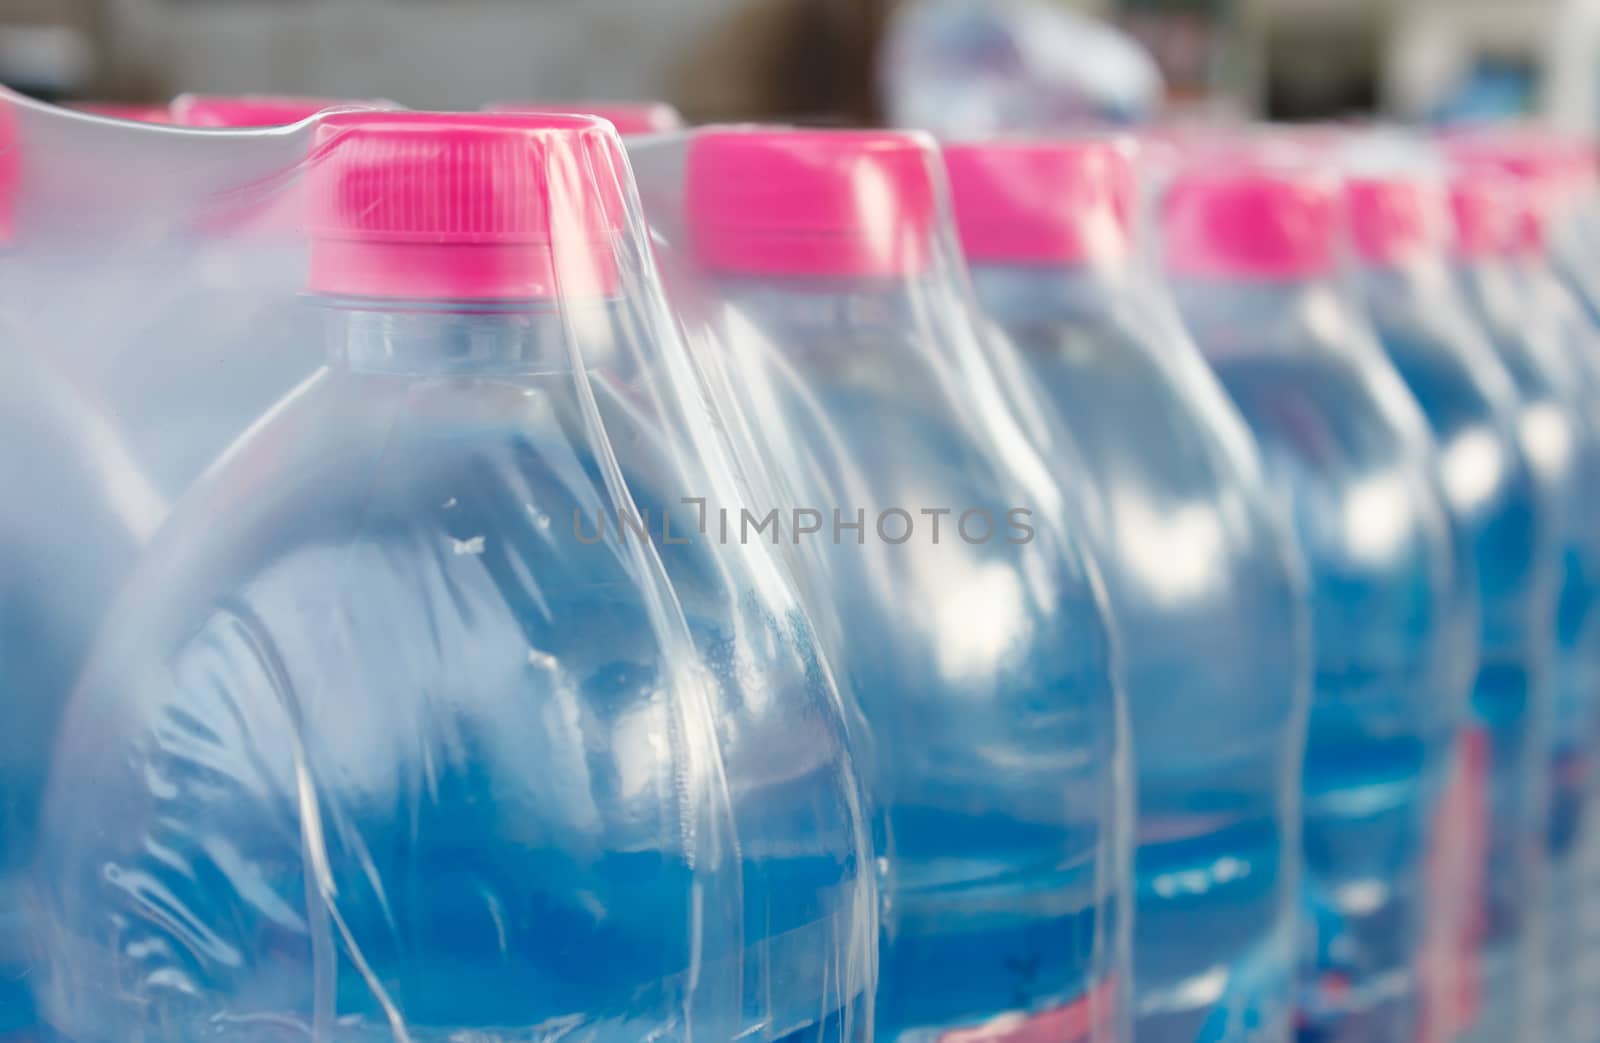  bottled water bottles in plastic wrap by vitawin